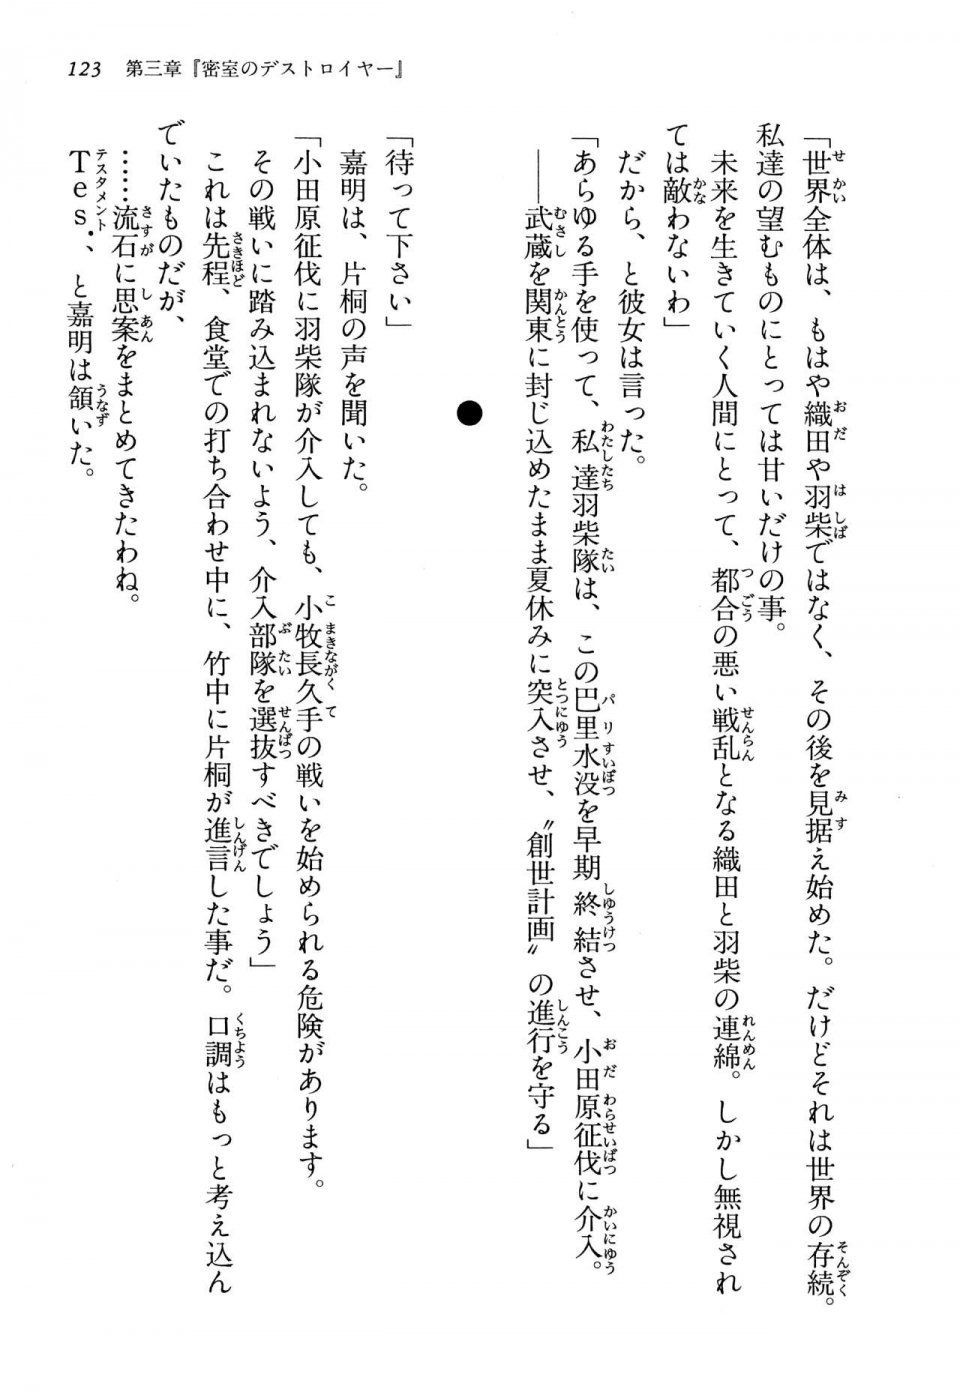 Kyoukai Senjou no Horizon LN Vol 13(6A) - Photo #123